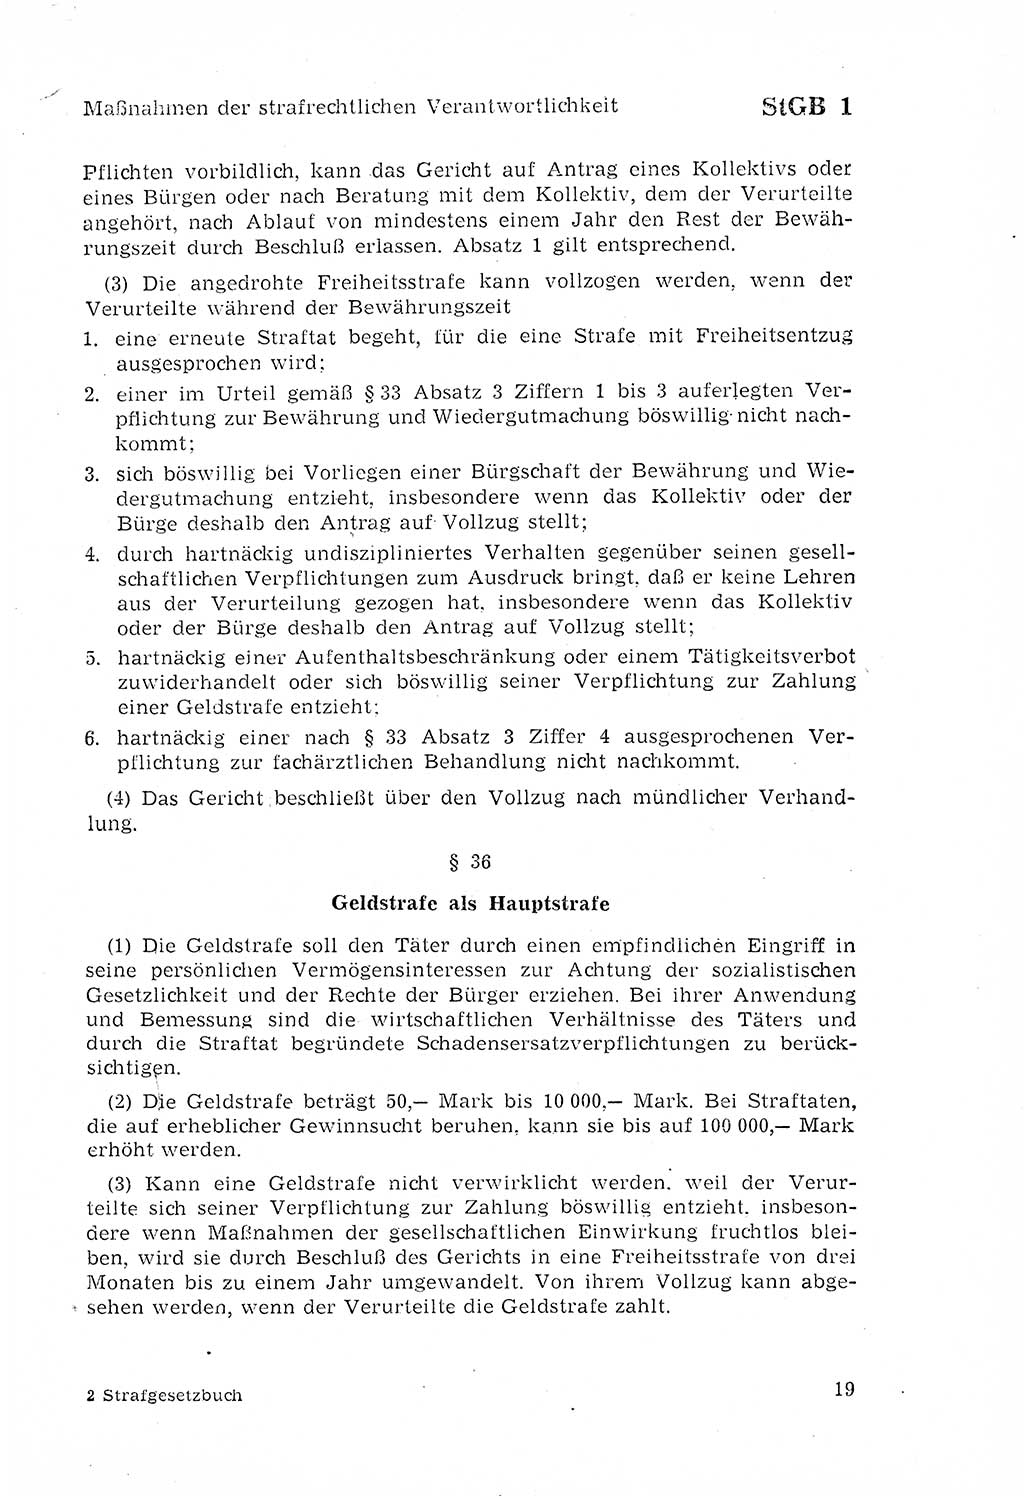 Strafgesetzbuch (StGB) der Deutschen Demokratischen Republik (DDR) 1968, Seite 19 (StGB DDR 1968, S. 19)